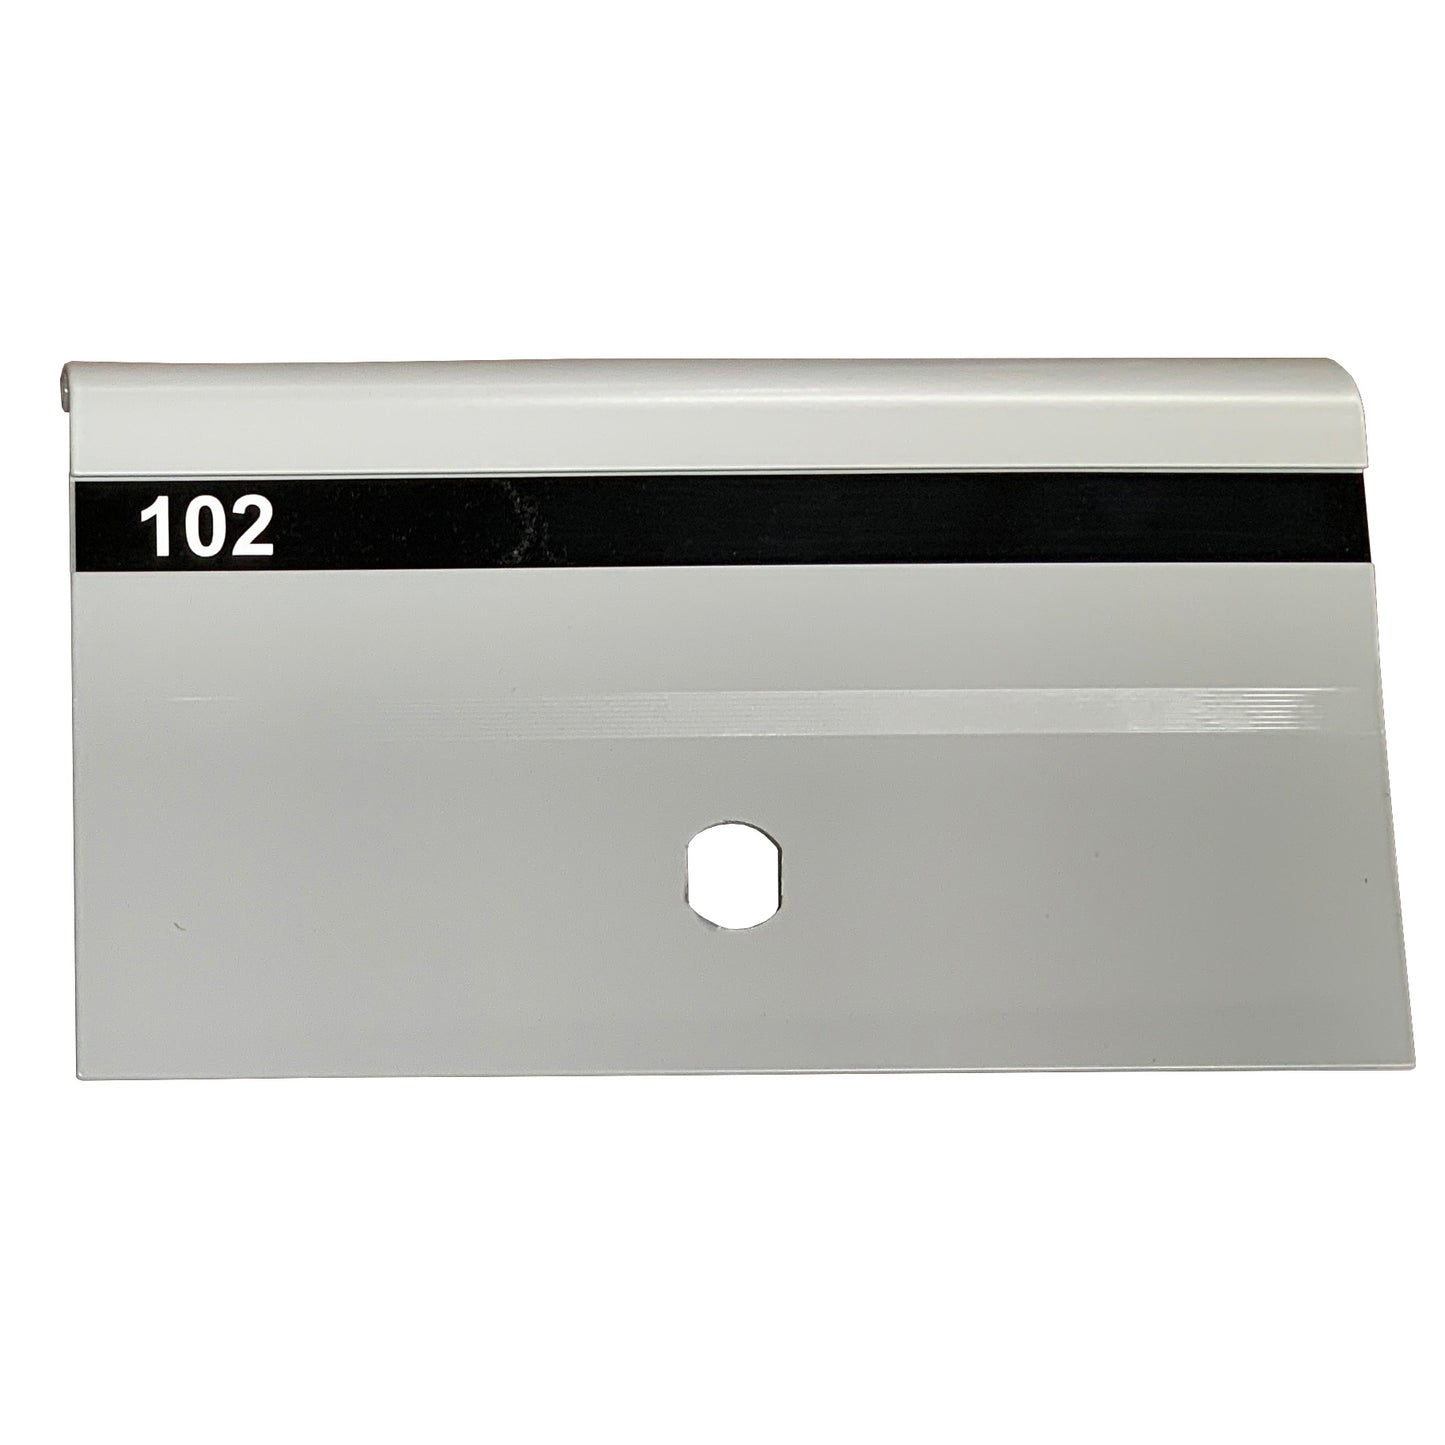 multibank door with vinyl letterbox number strip 102